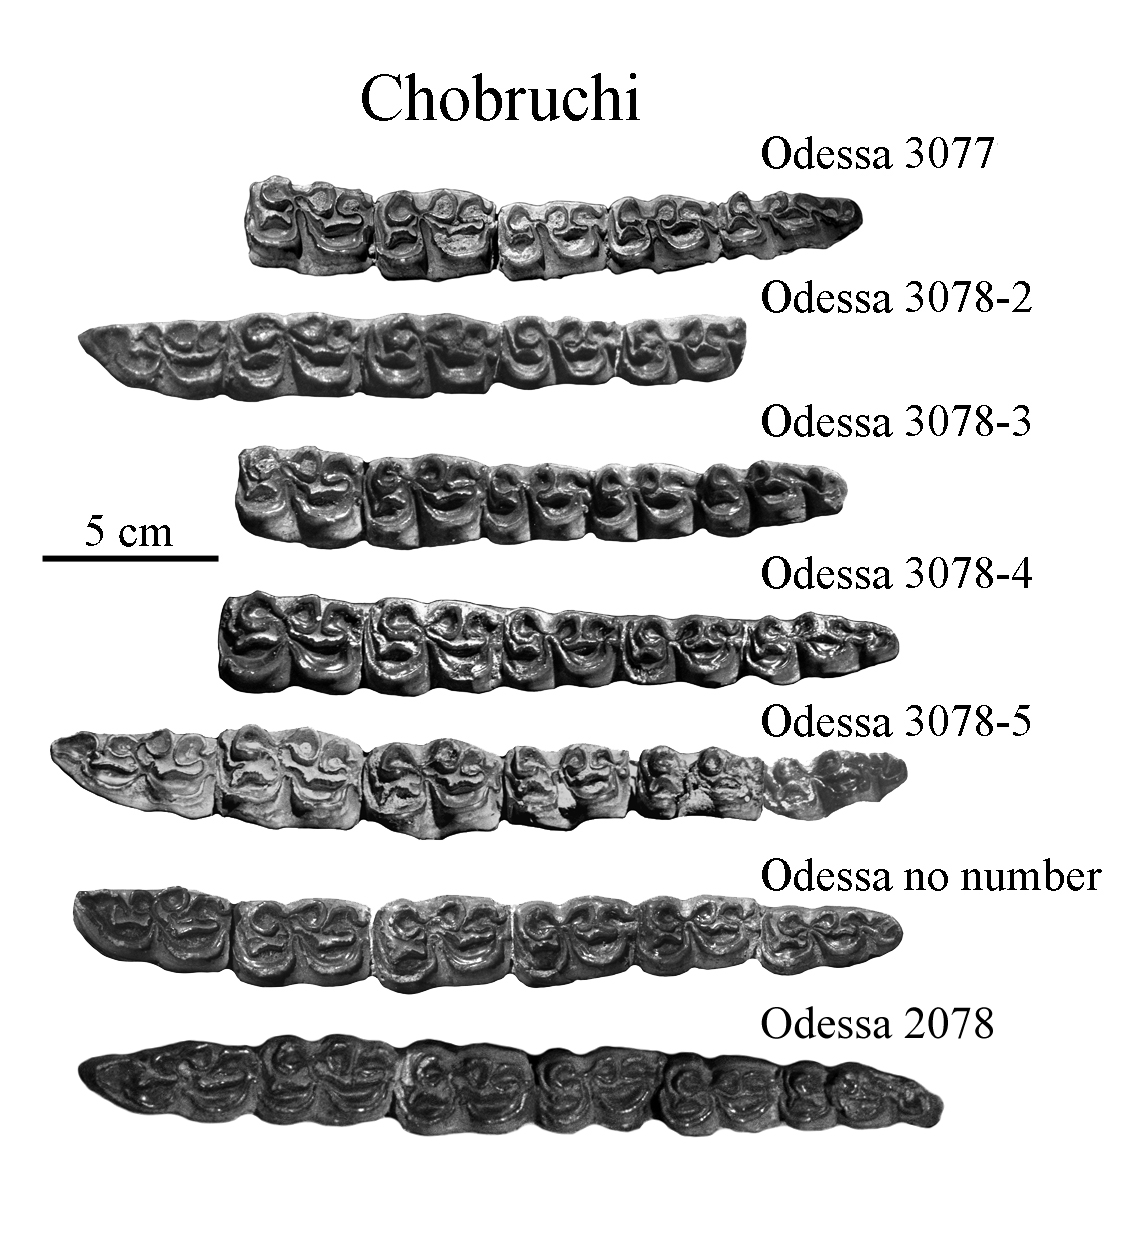 Chobruchi Lower Cheek Teeth photos